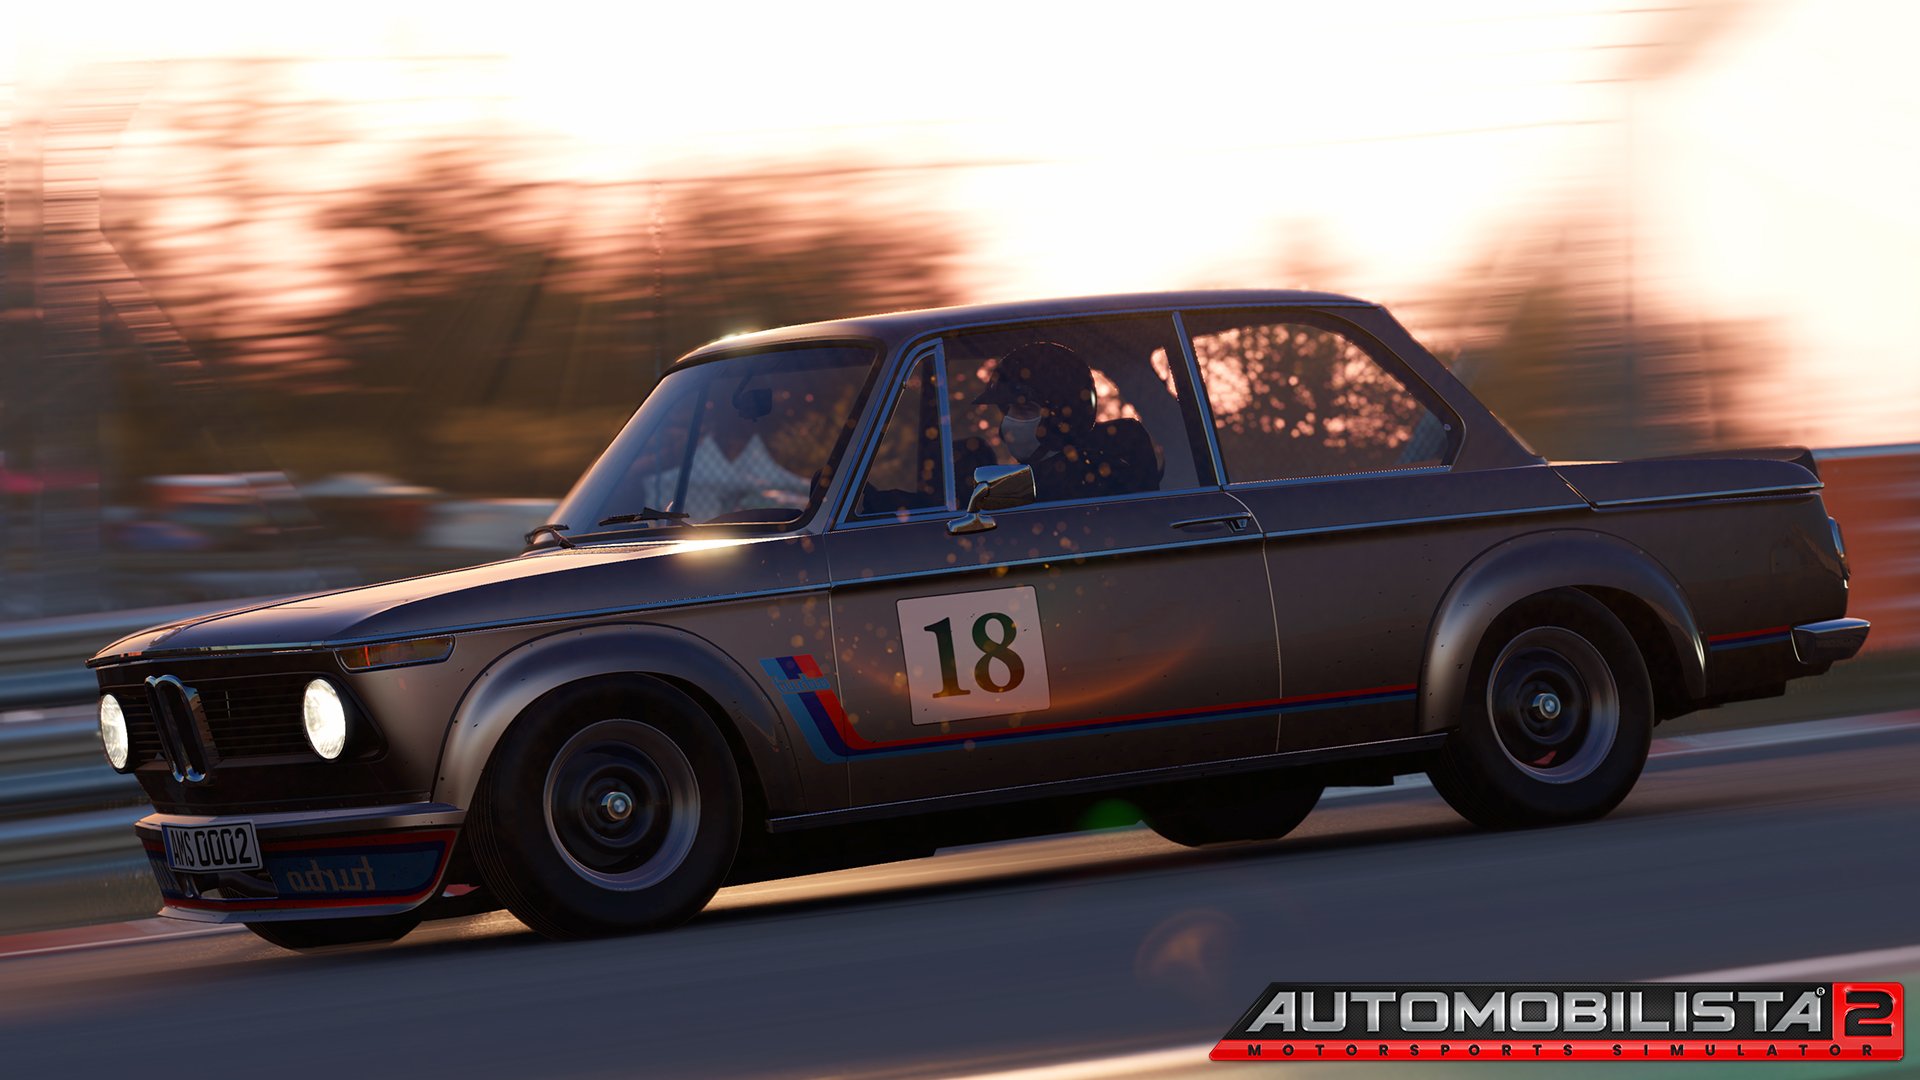 More information about "Automobilista 2: nuovo update disponibile con la BMW 2002 Turbo"